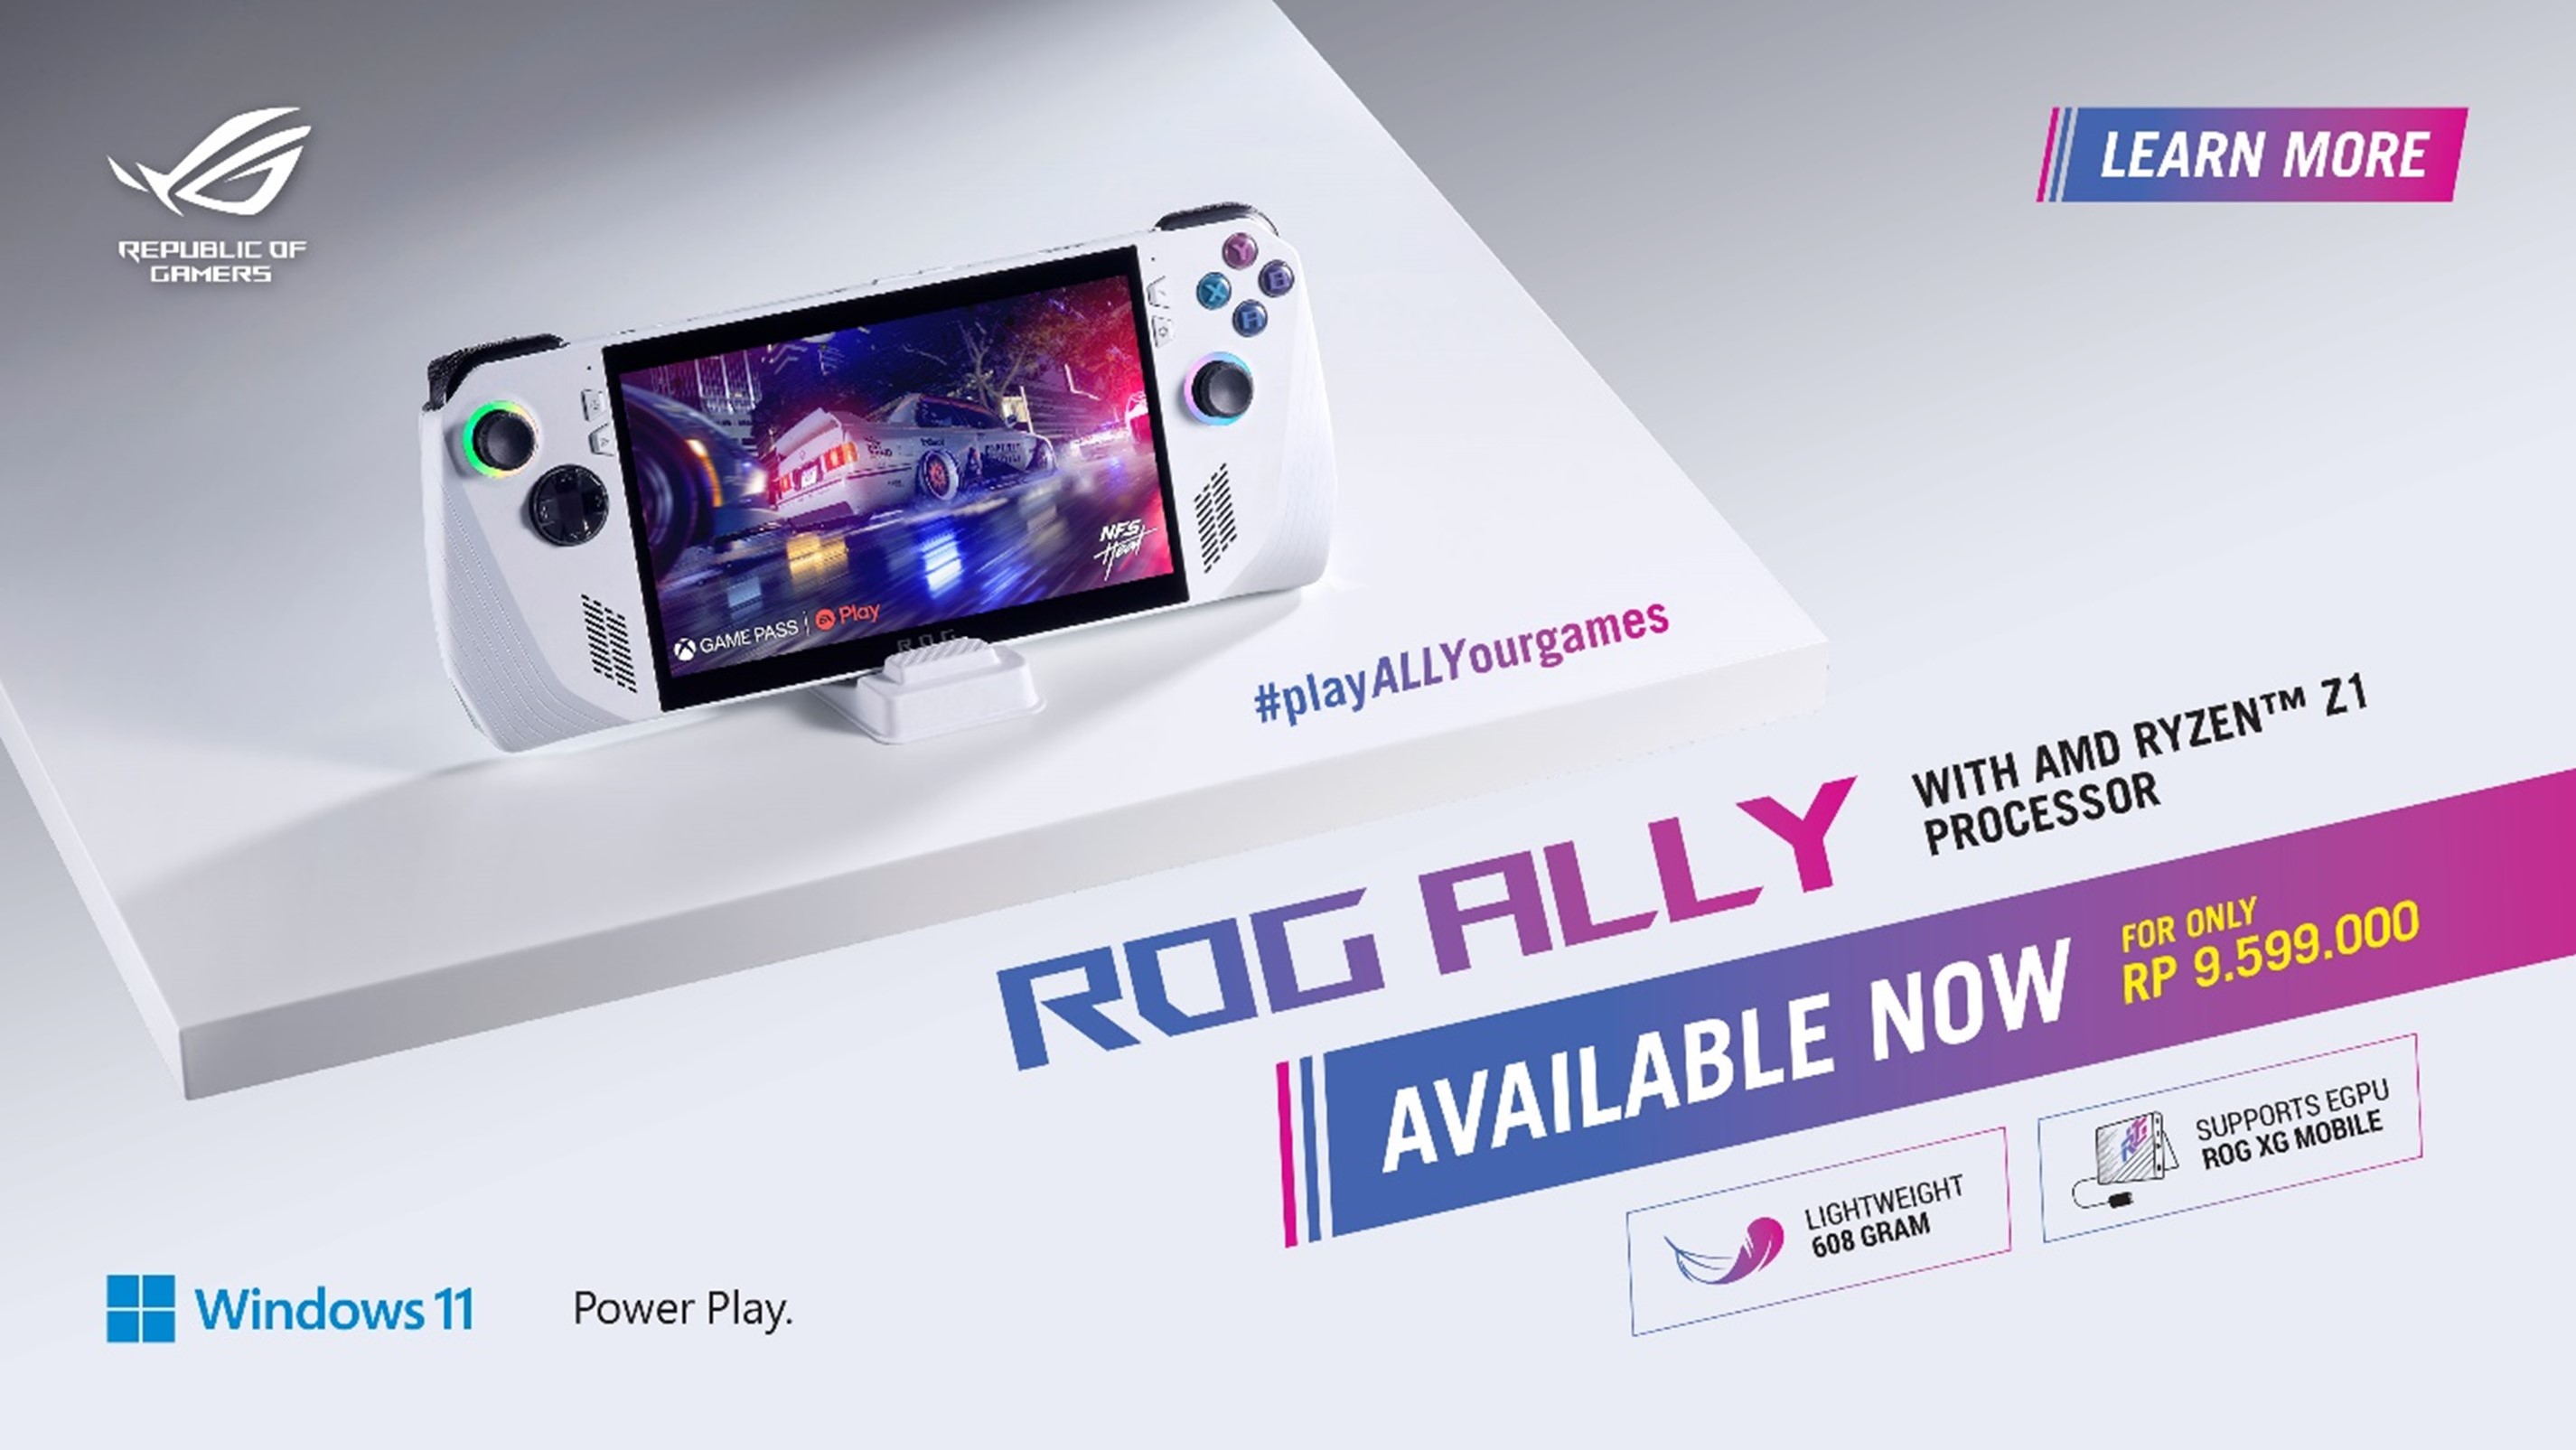 ROG Ally, Game Konsol dari ASUS dengan Extreme Processor